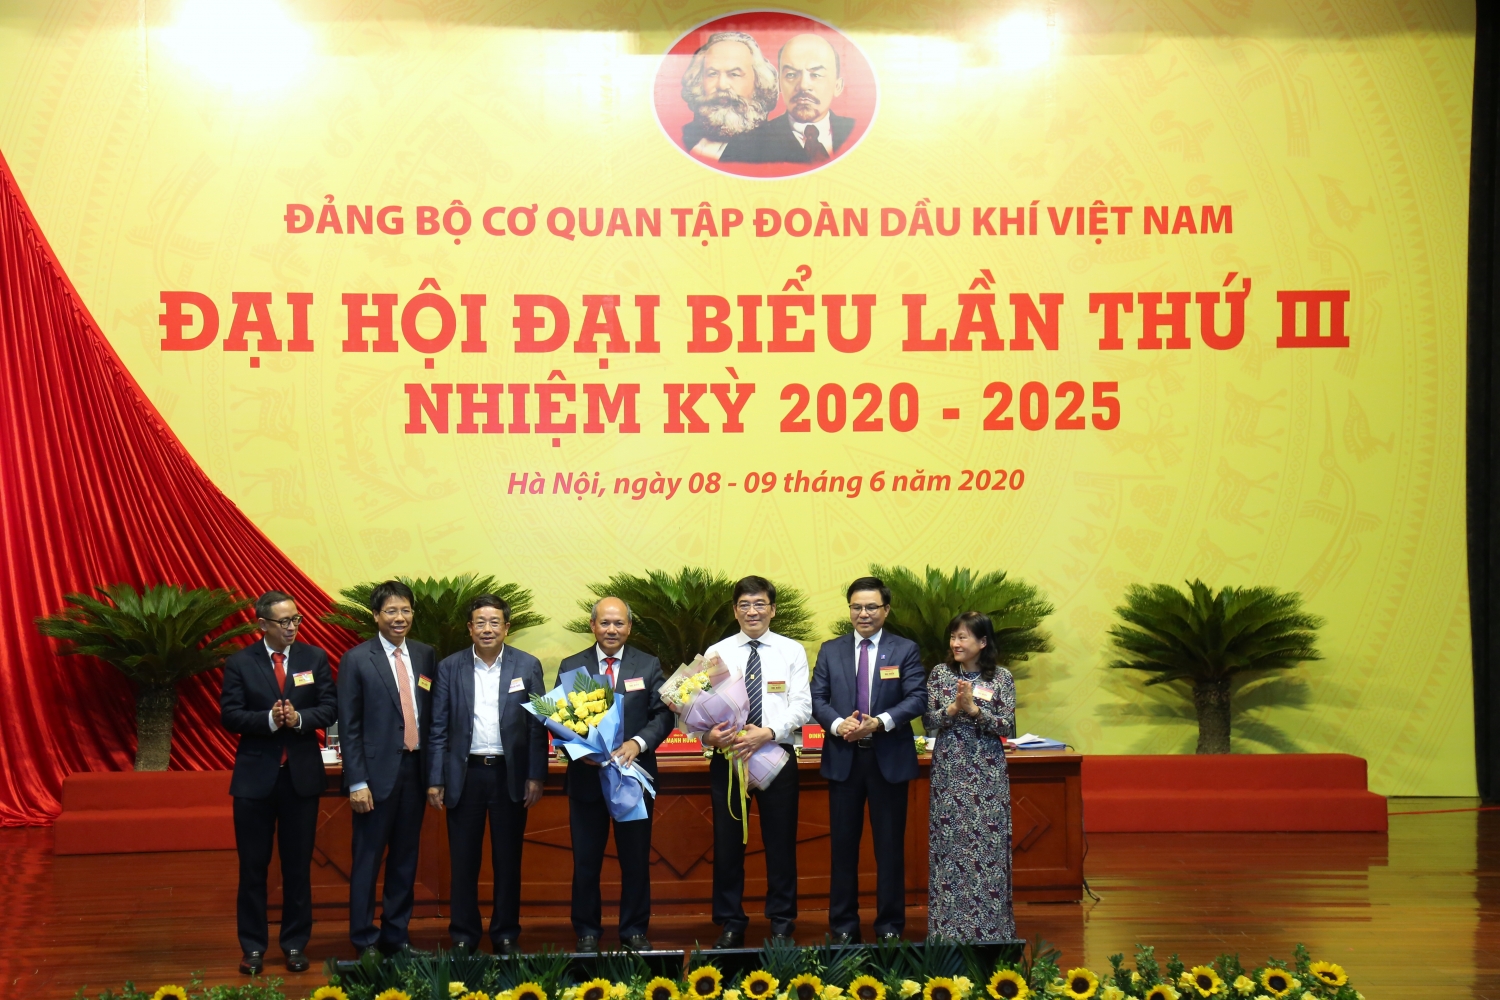 Không ngừng củng cố và nâng cao uy tín của Tập đoàn Dầu khí Việt Nam